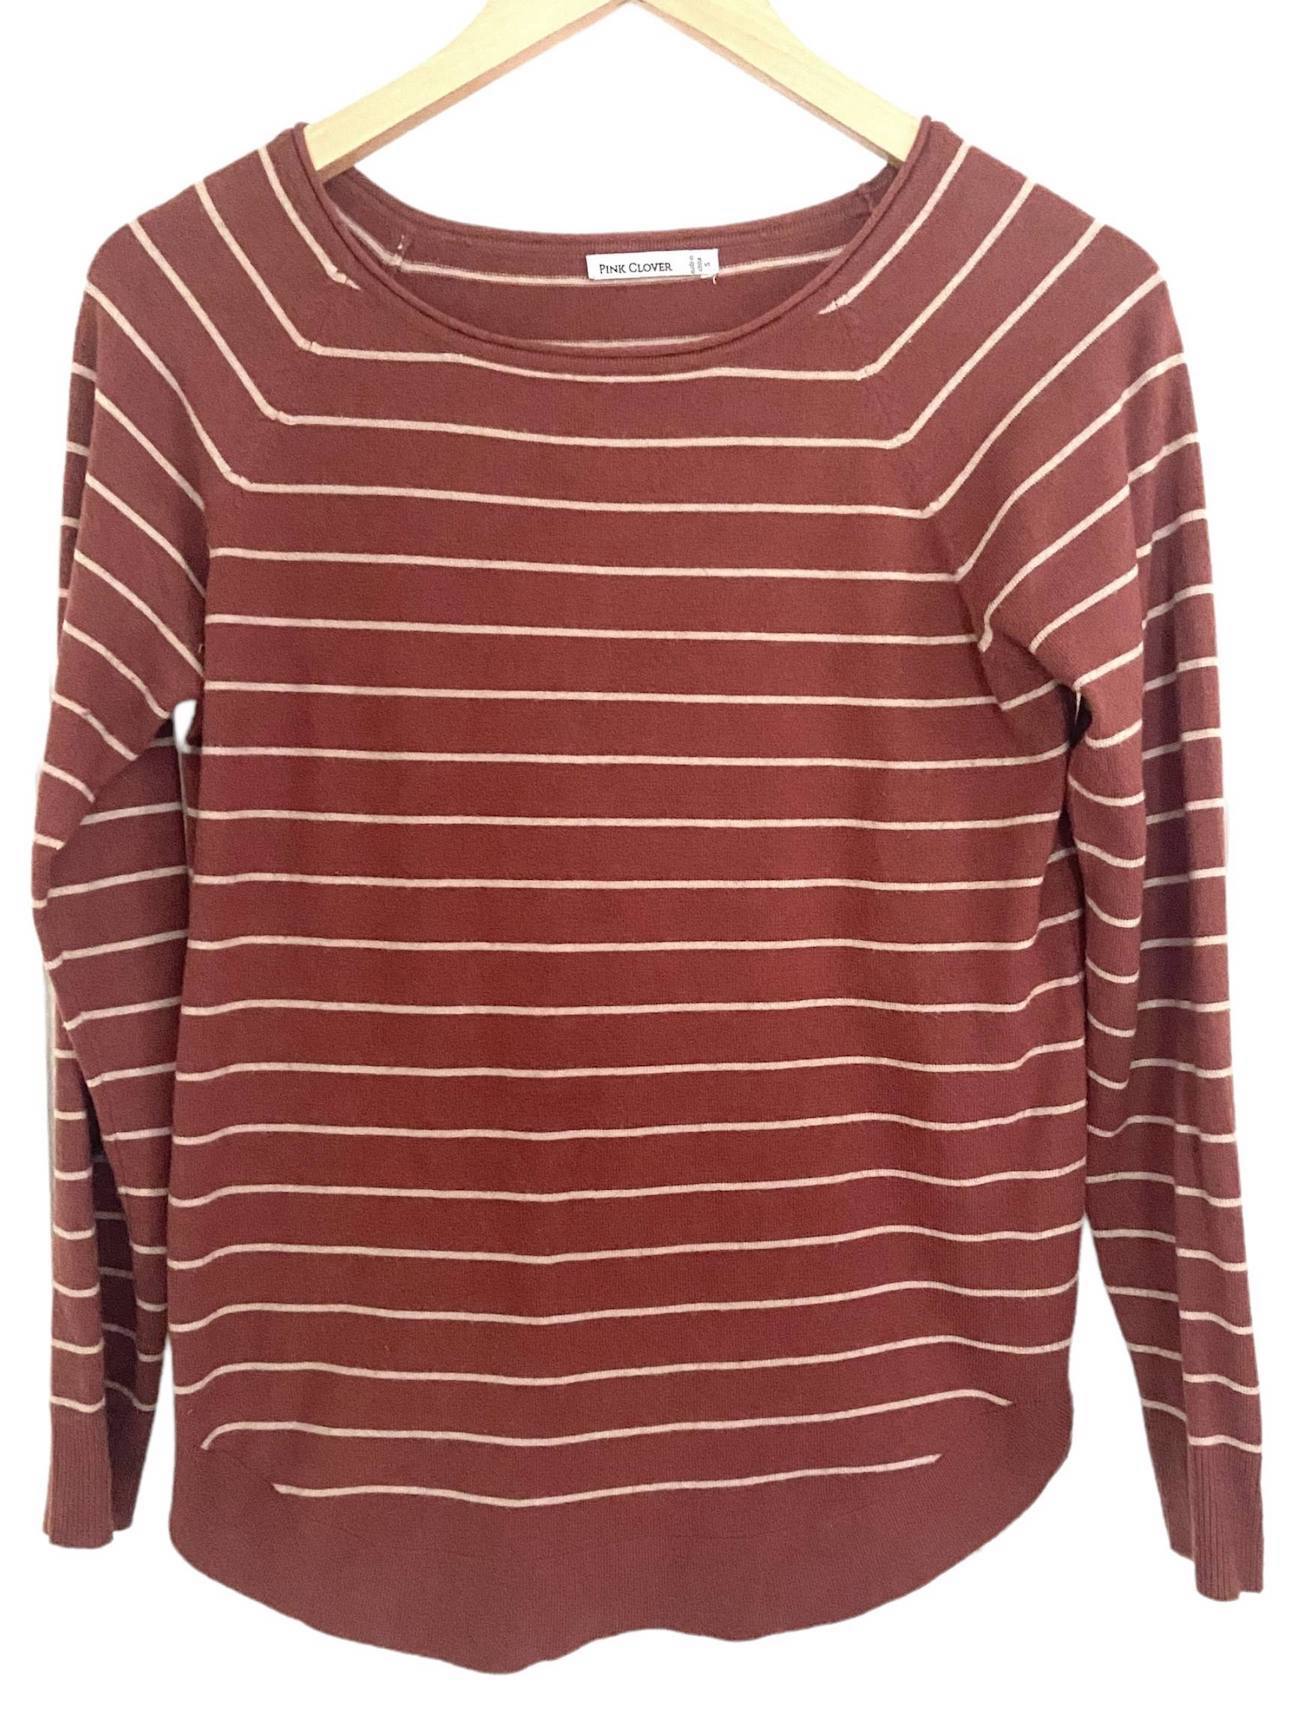 Dark Autumn PINK CLOVER stripe sweater